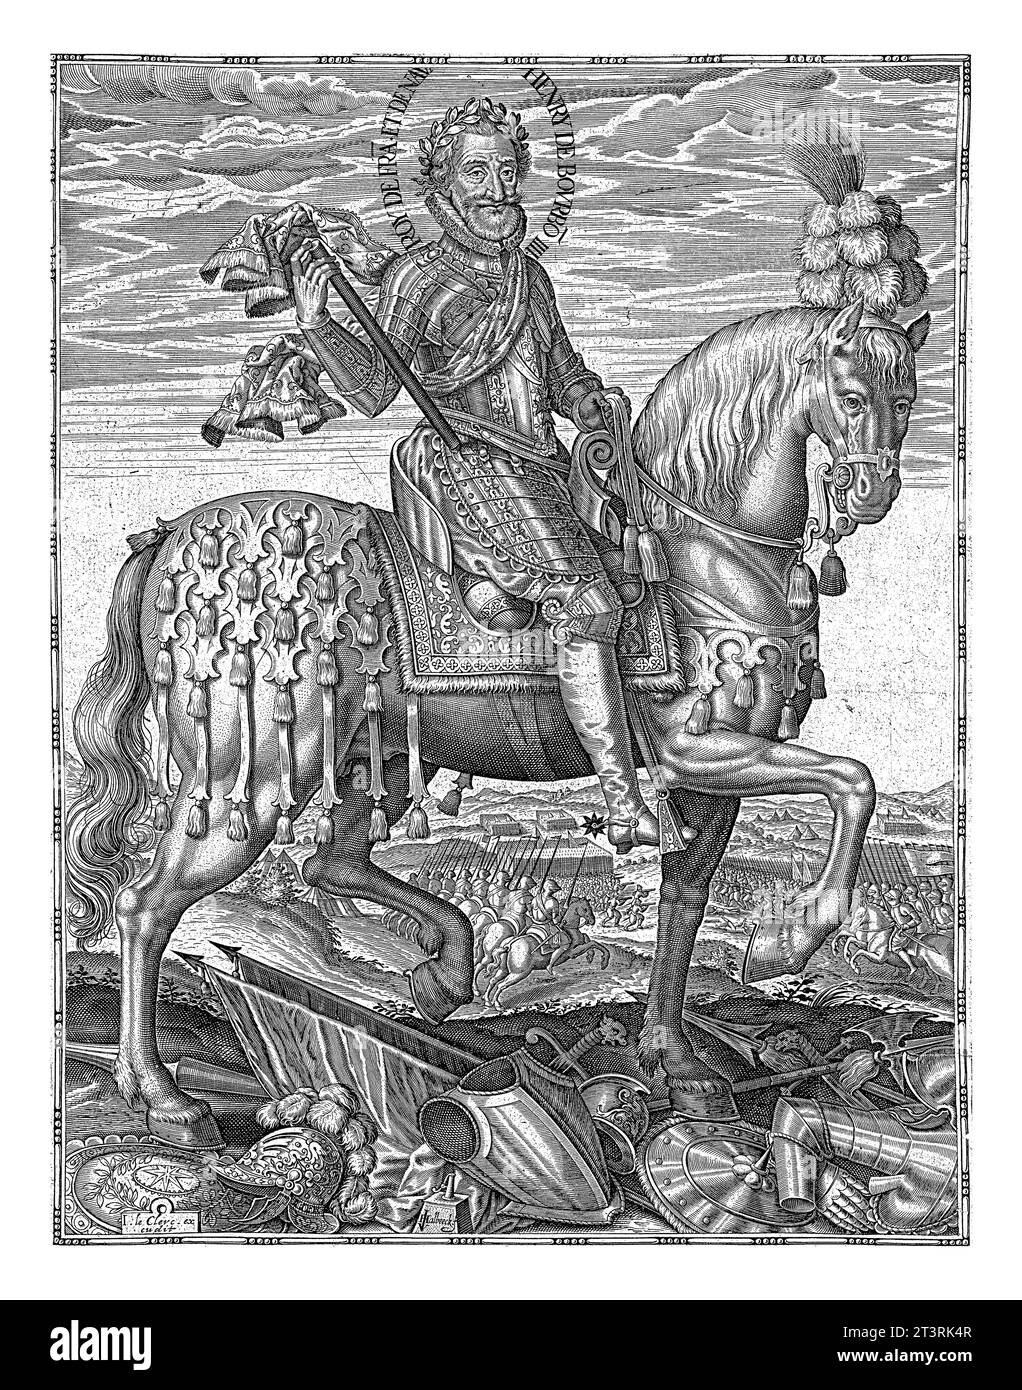 Ritratto di Enrico IV, re di Francia e Navarra, Jan van Halbeeck, 1600 - 1610 Ritratto equestre di Enrico IV, re di Francia e Navarra, vestito i Foto Stock